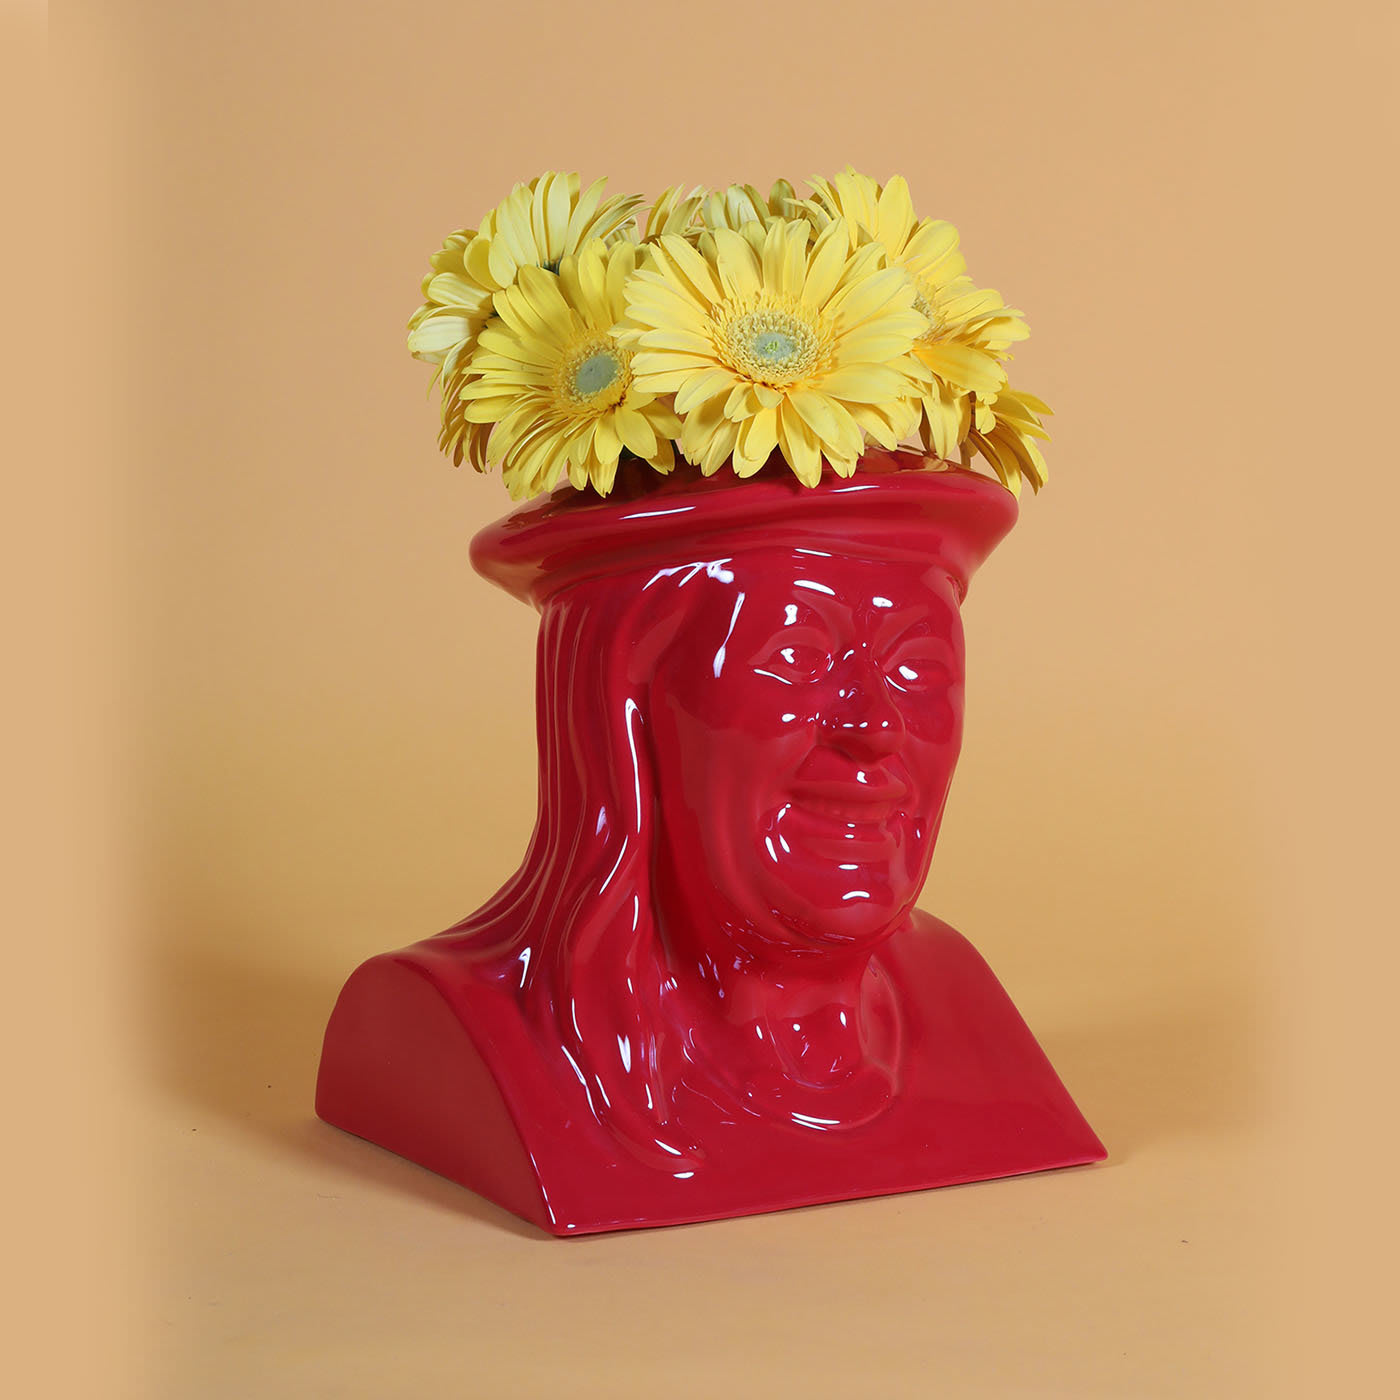 La Vilma Red Flowerpot by Jimmy D Lanza - Loopo